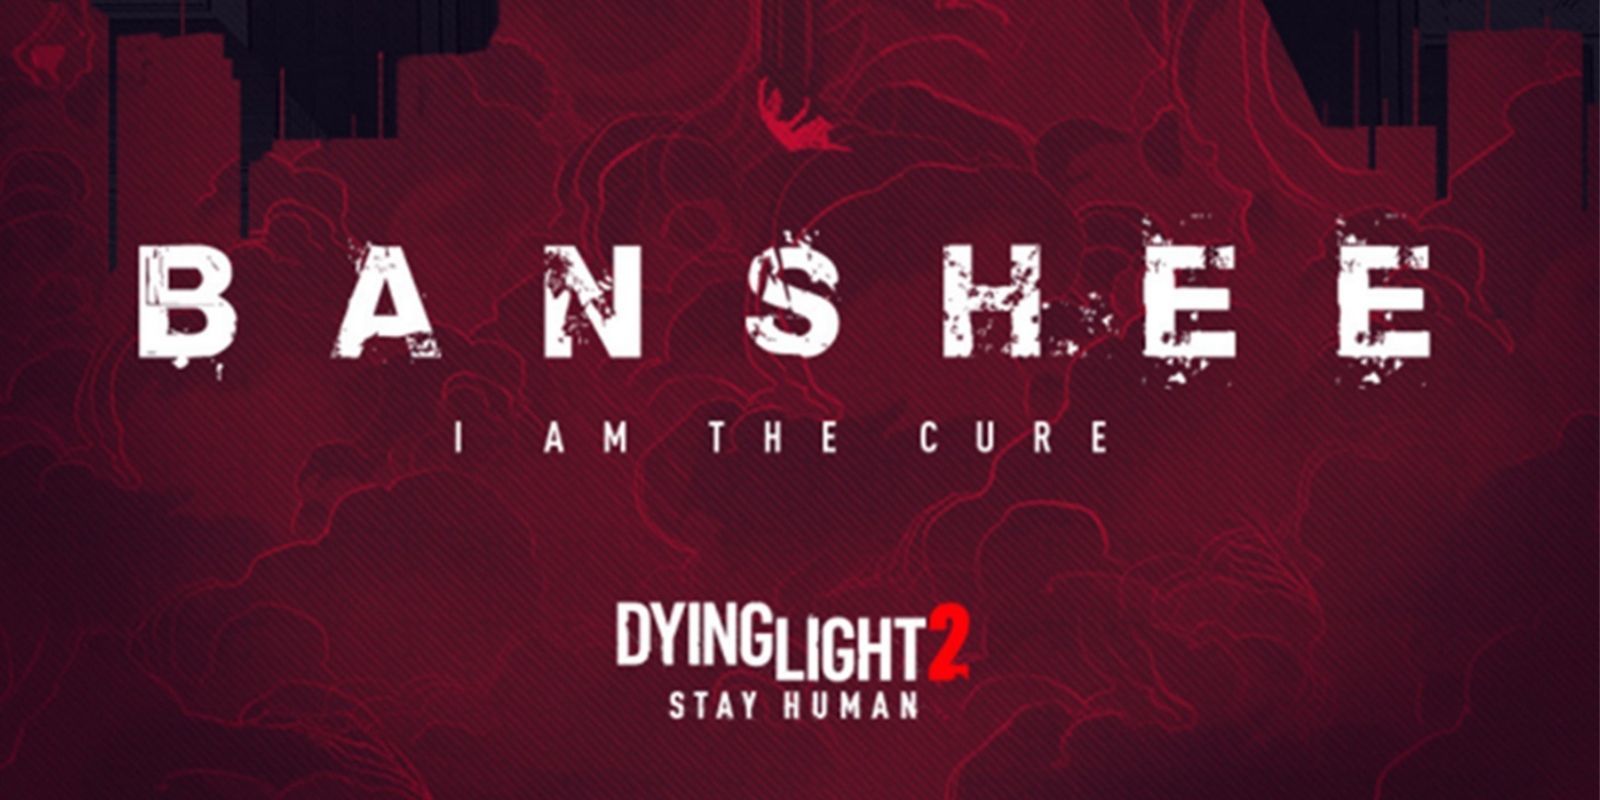 Dying Light 2 Stay Human, cómic, GamersRD